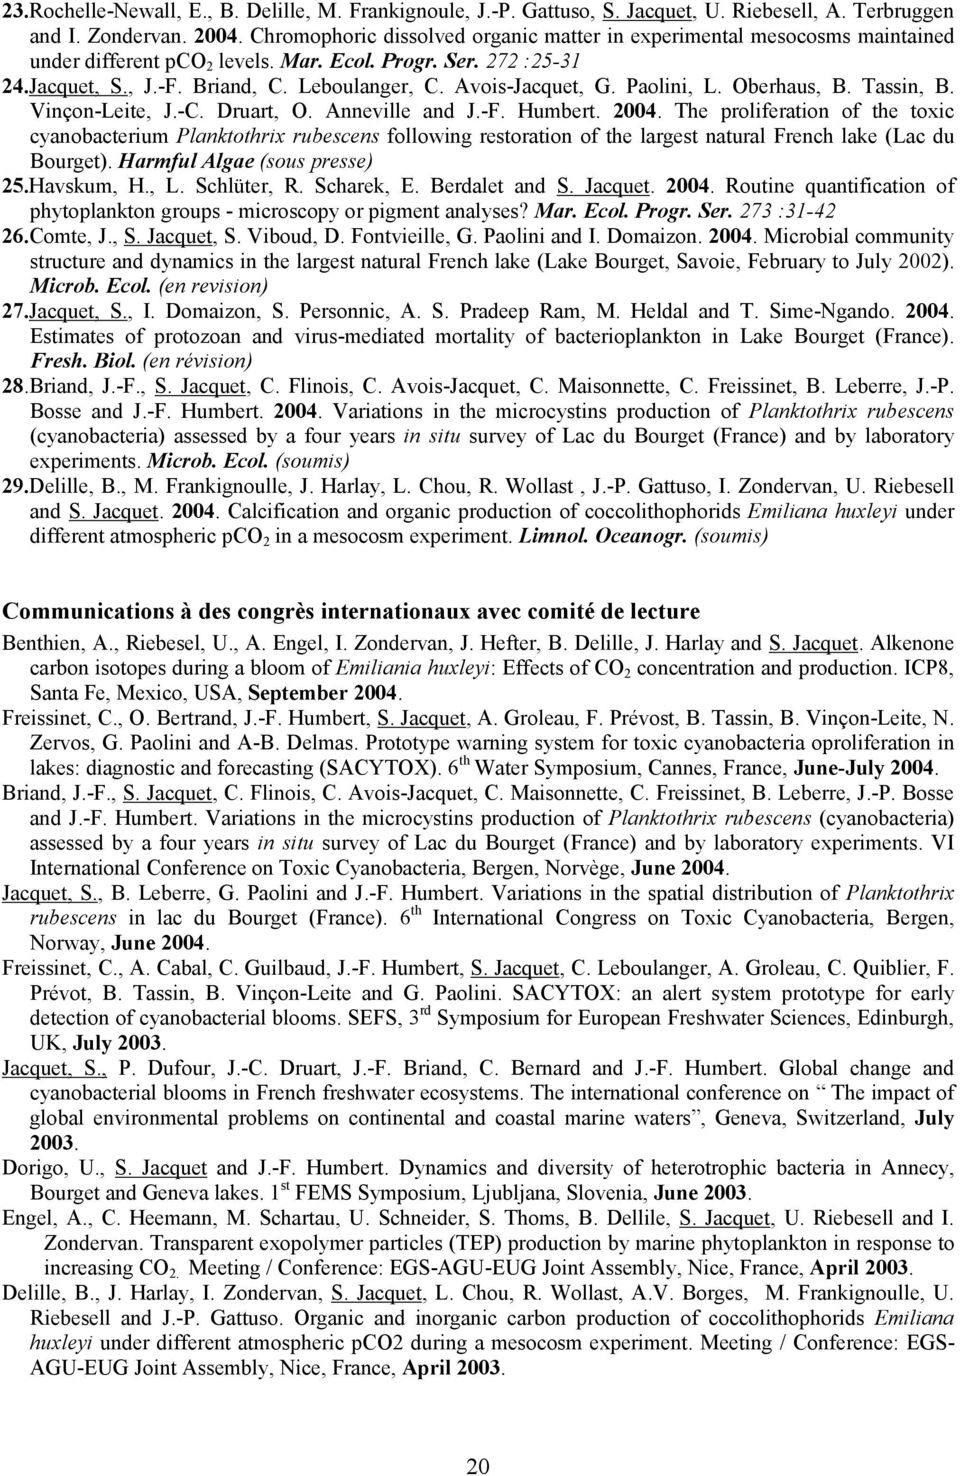 Avois-Jacquet, G. Paolini, L. Oberhaus, B. Tassin, B. Vinçon-Leite, J.-C. Druart, O. Anneville and J.-F. Humbert. 2004.